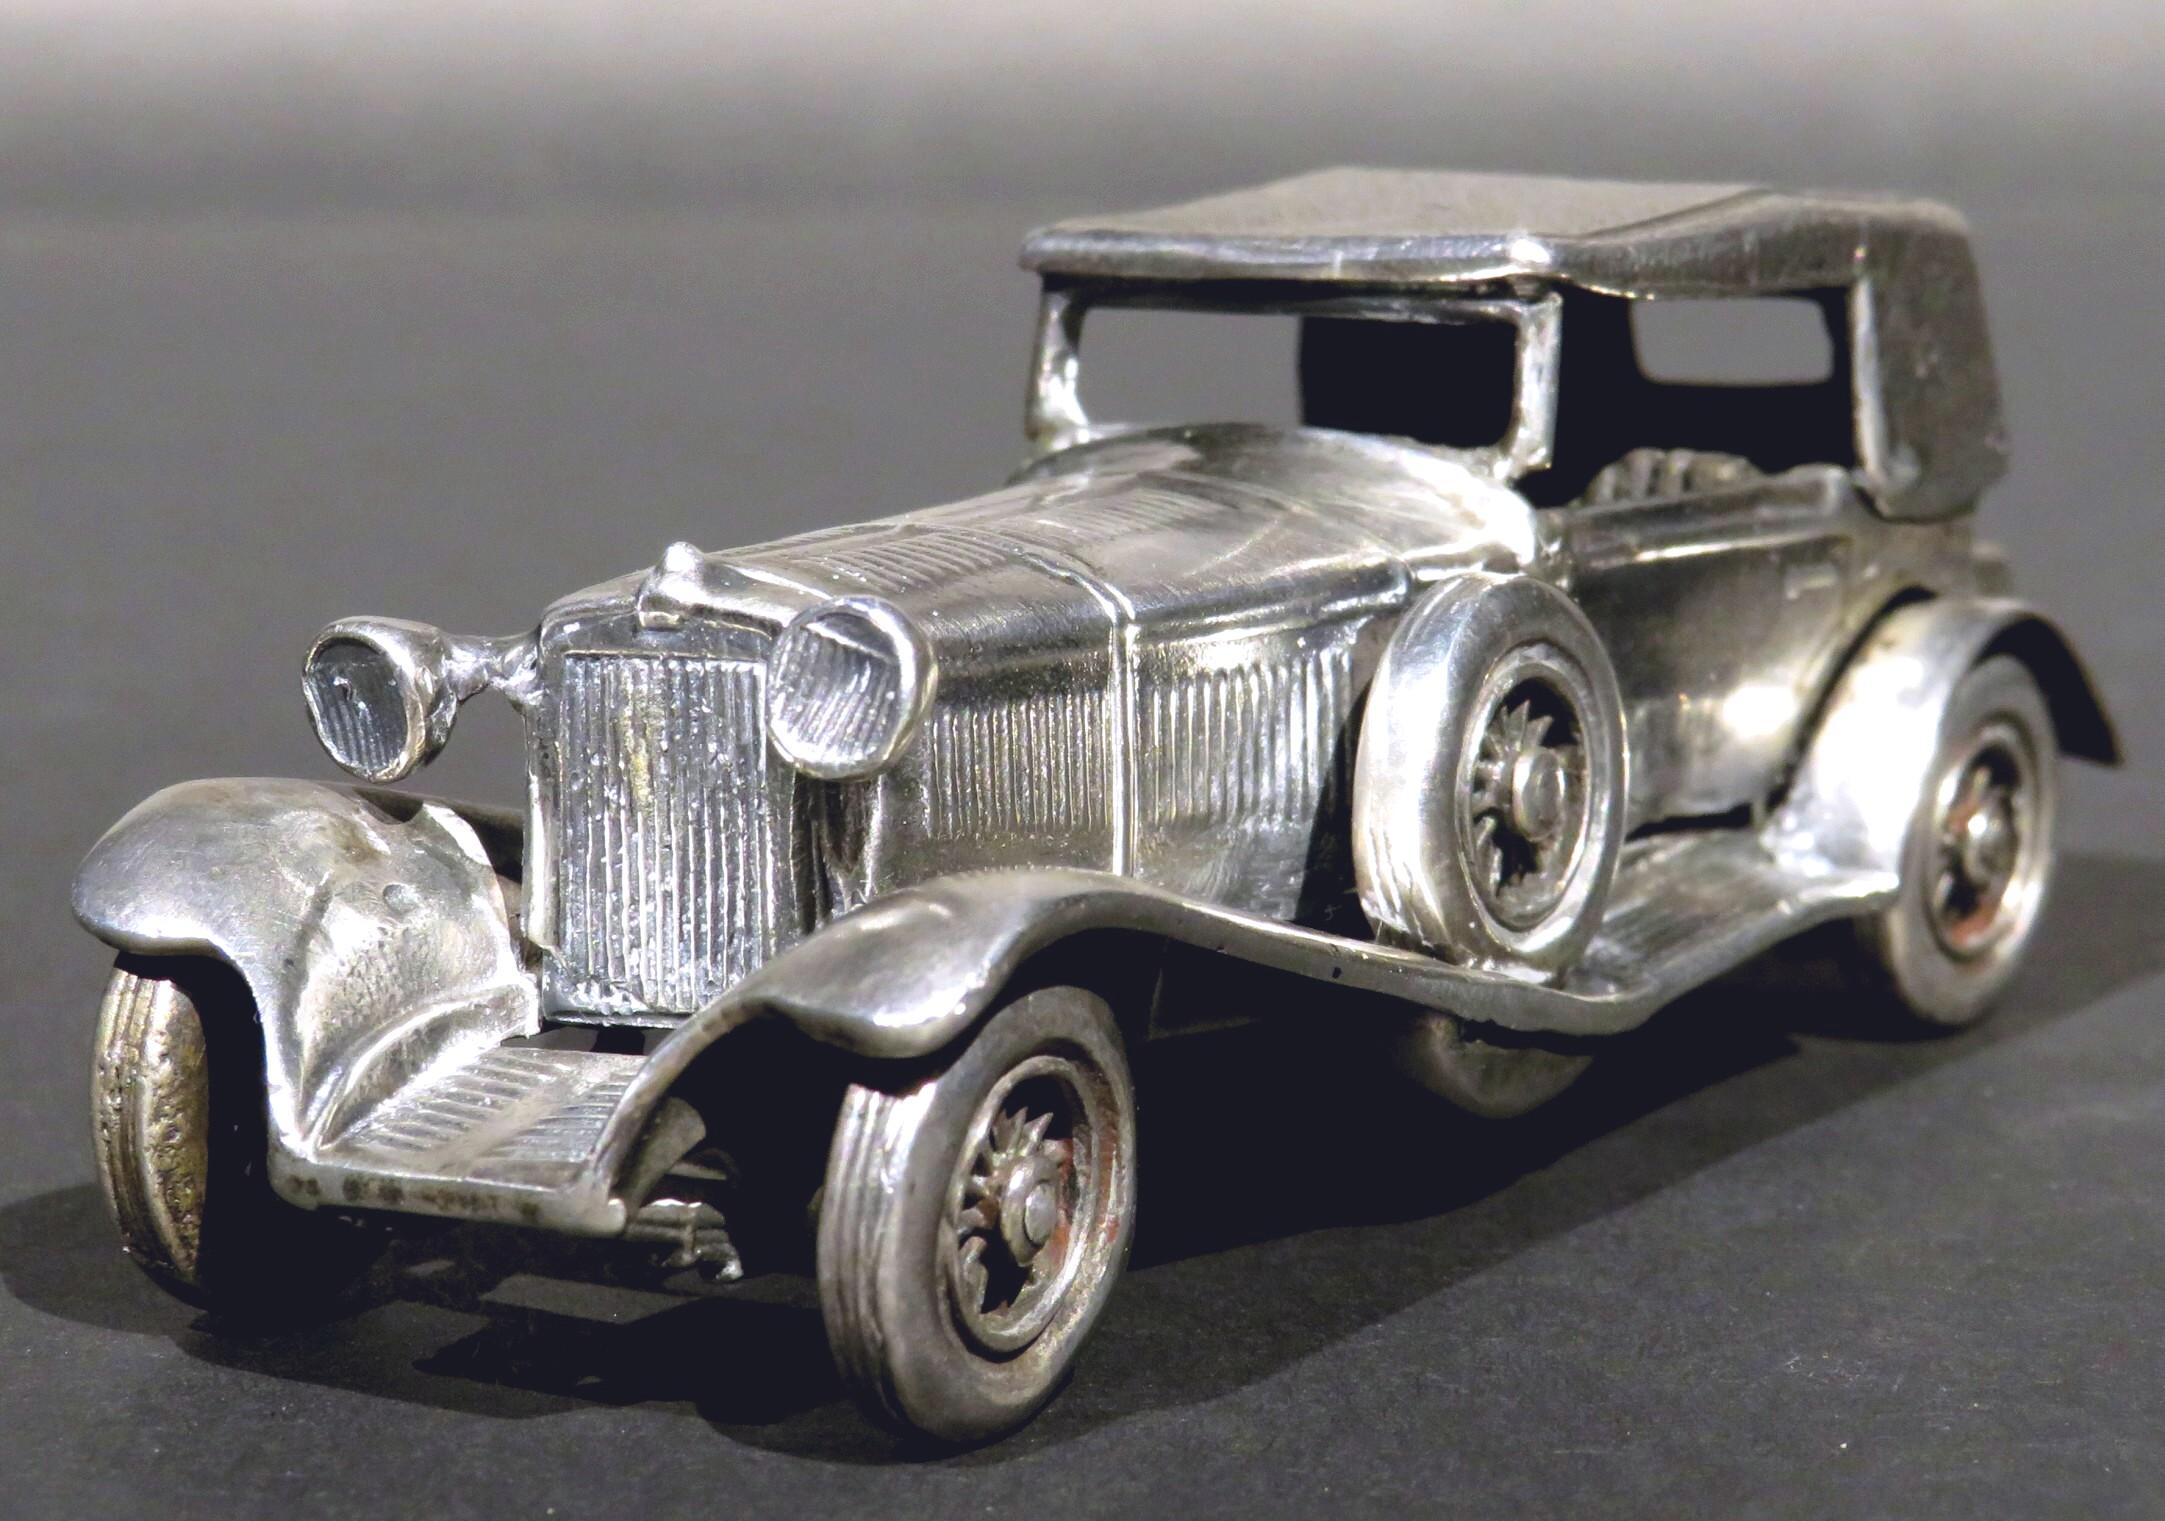 Un modèle réduit rare de la Mercedes Benz SS (Super Sport) classique de 1928, qui était la voiture la plus rapide de son époque. Entièrement réalisé en argent massif, le châssis présente un capot ventilé et ceinturé, des roues pivotantes, des phares